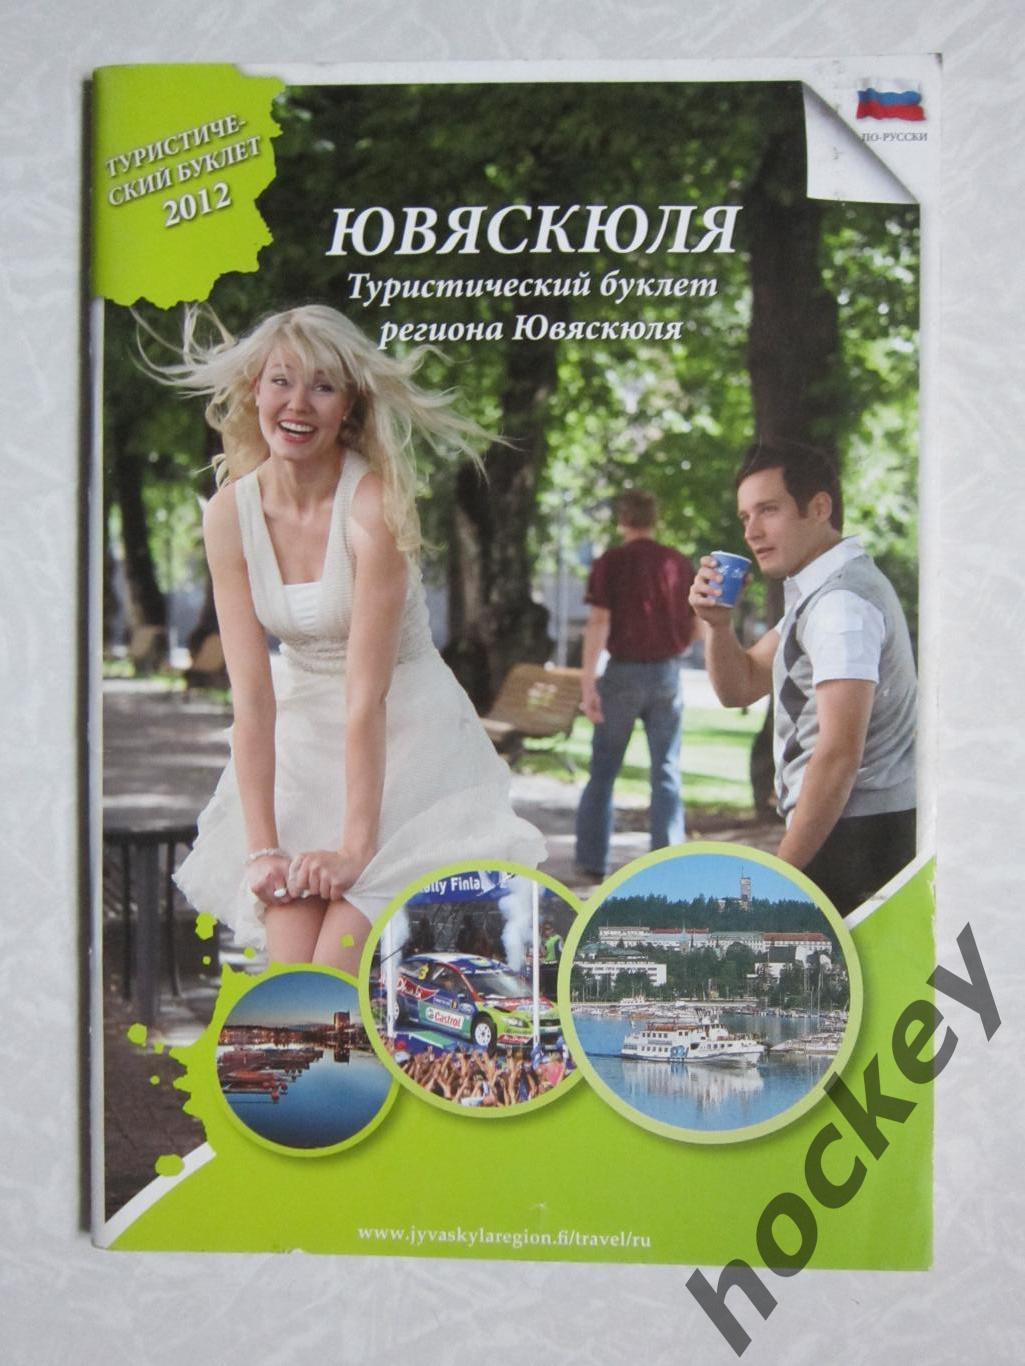 Ювяскюля. Туристический буклет региона Ювяскюля. Карта.